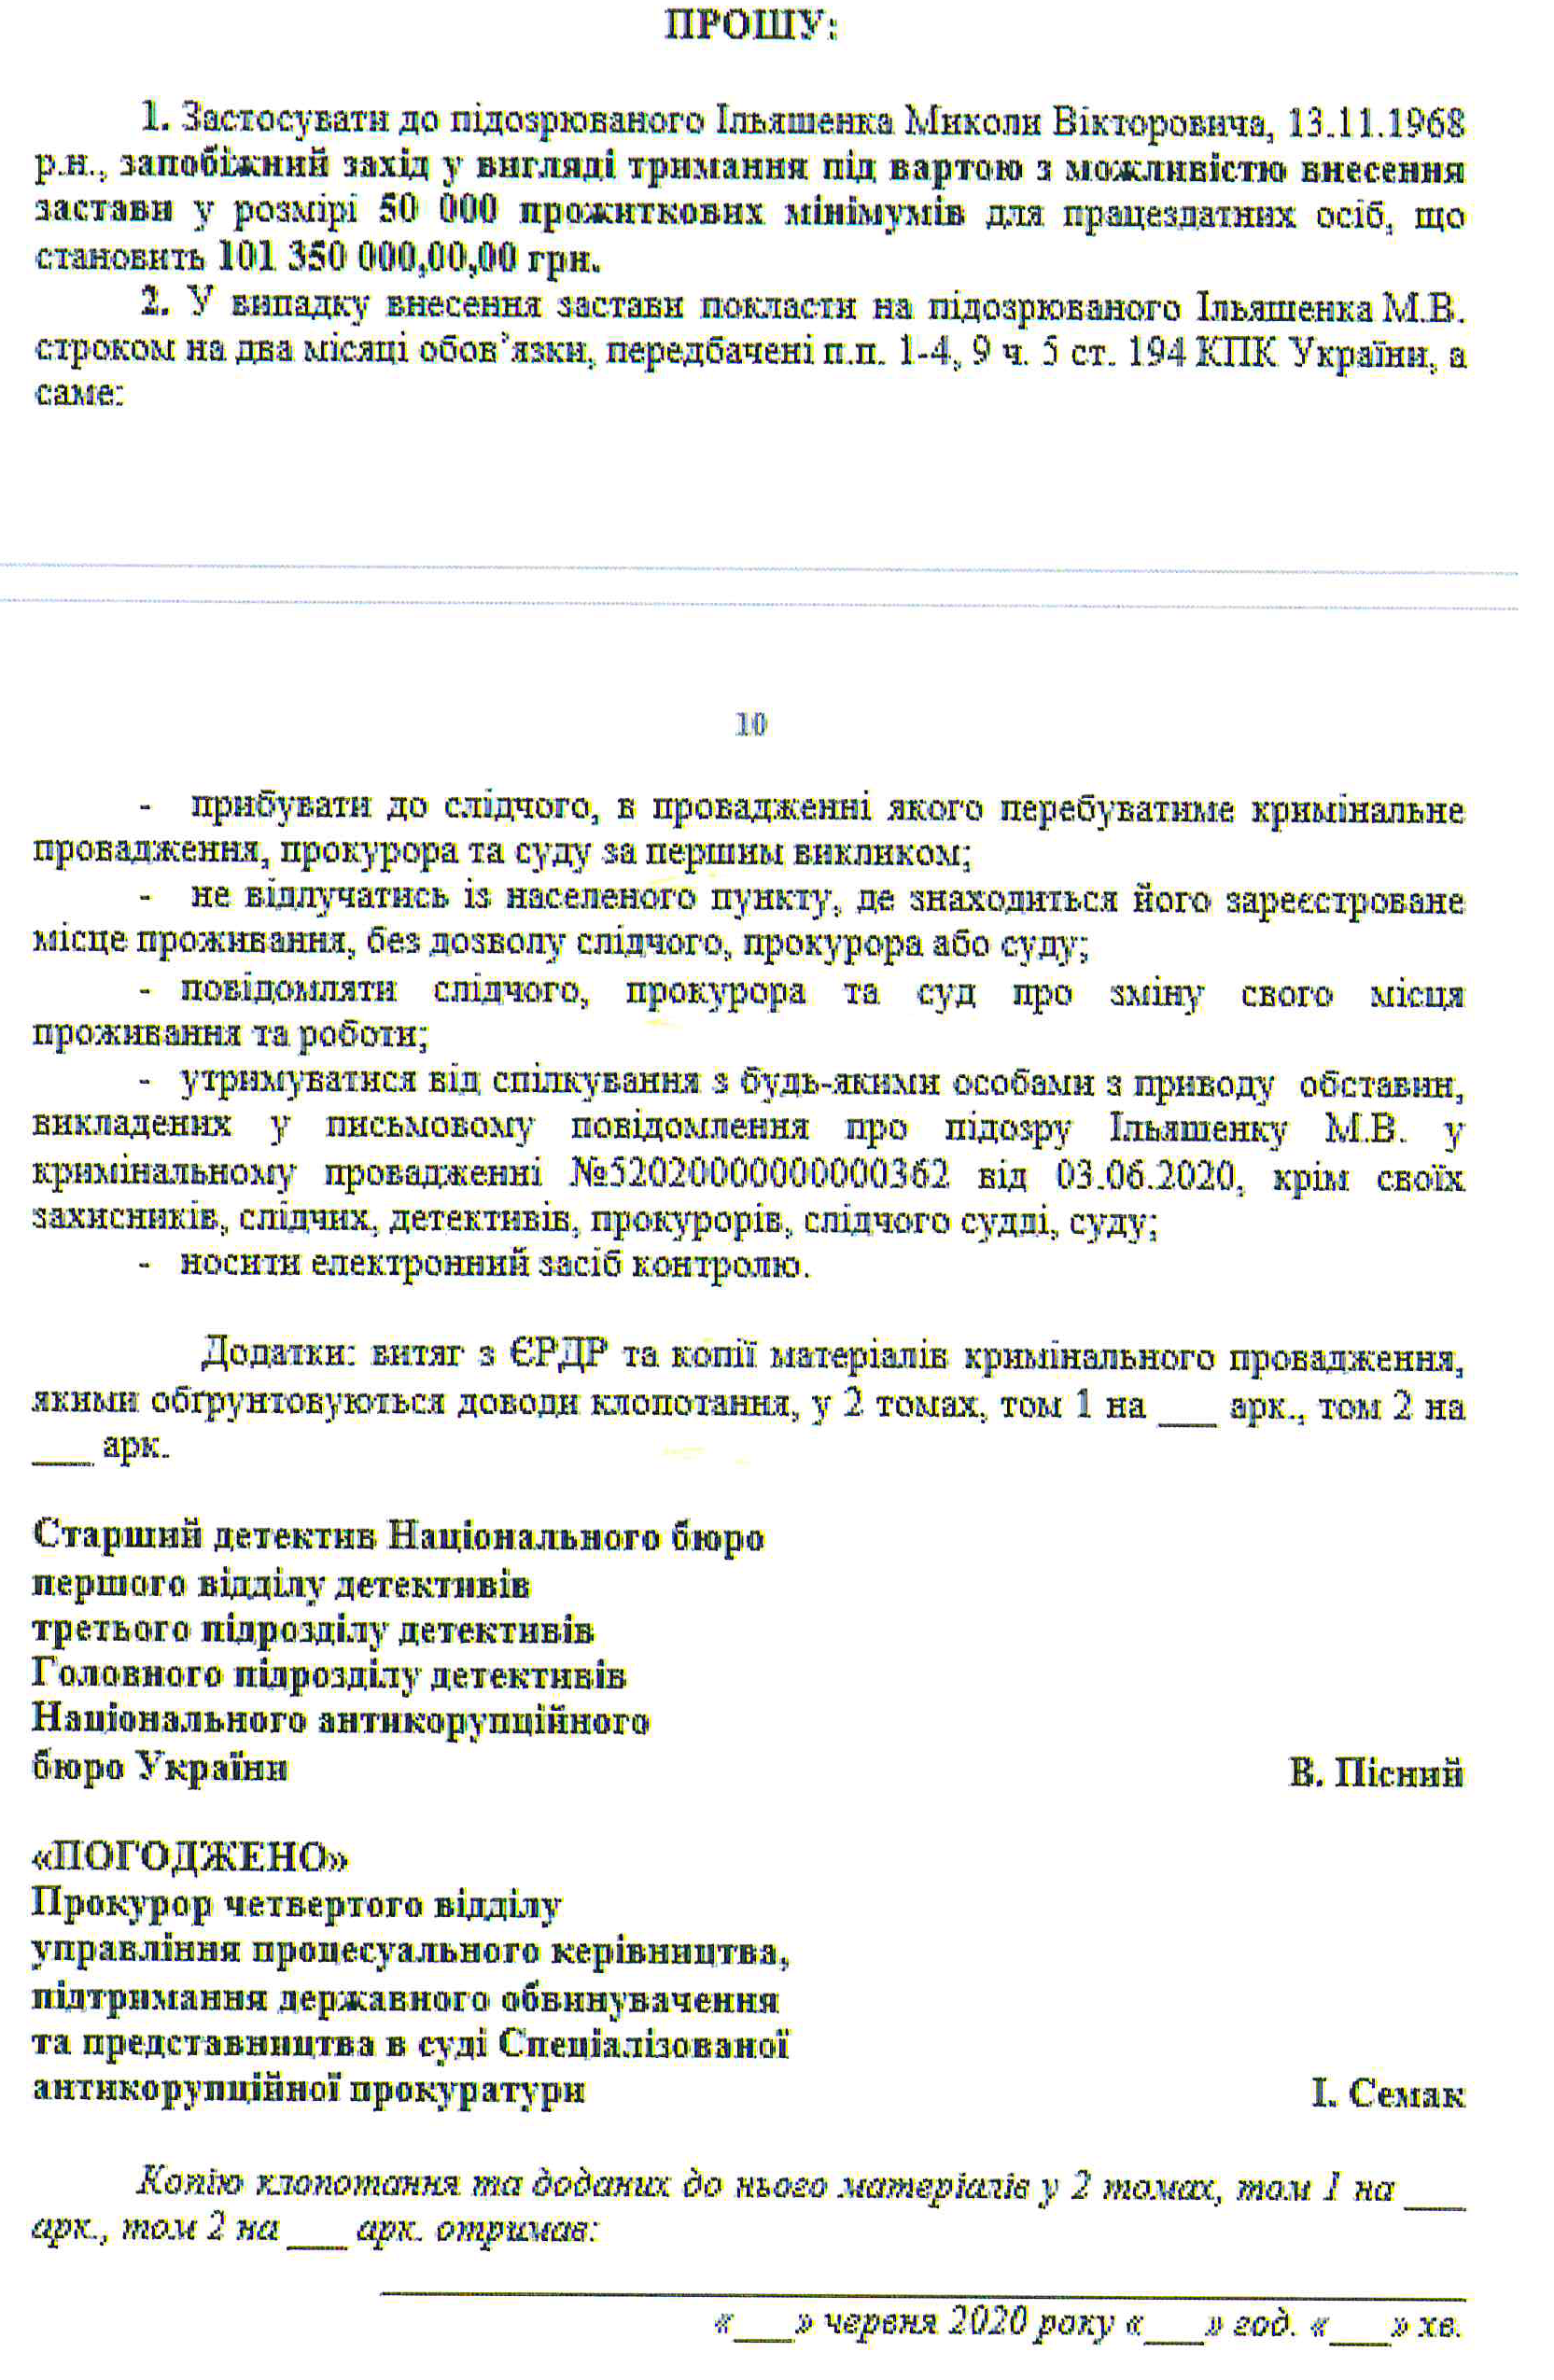 Requête du NABU pour une mesure préventive sous forme de détention du suspect Iliachenko